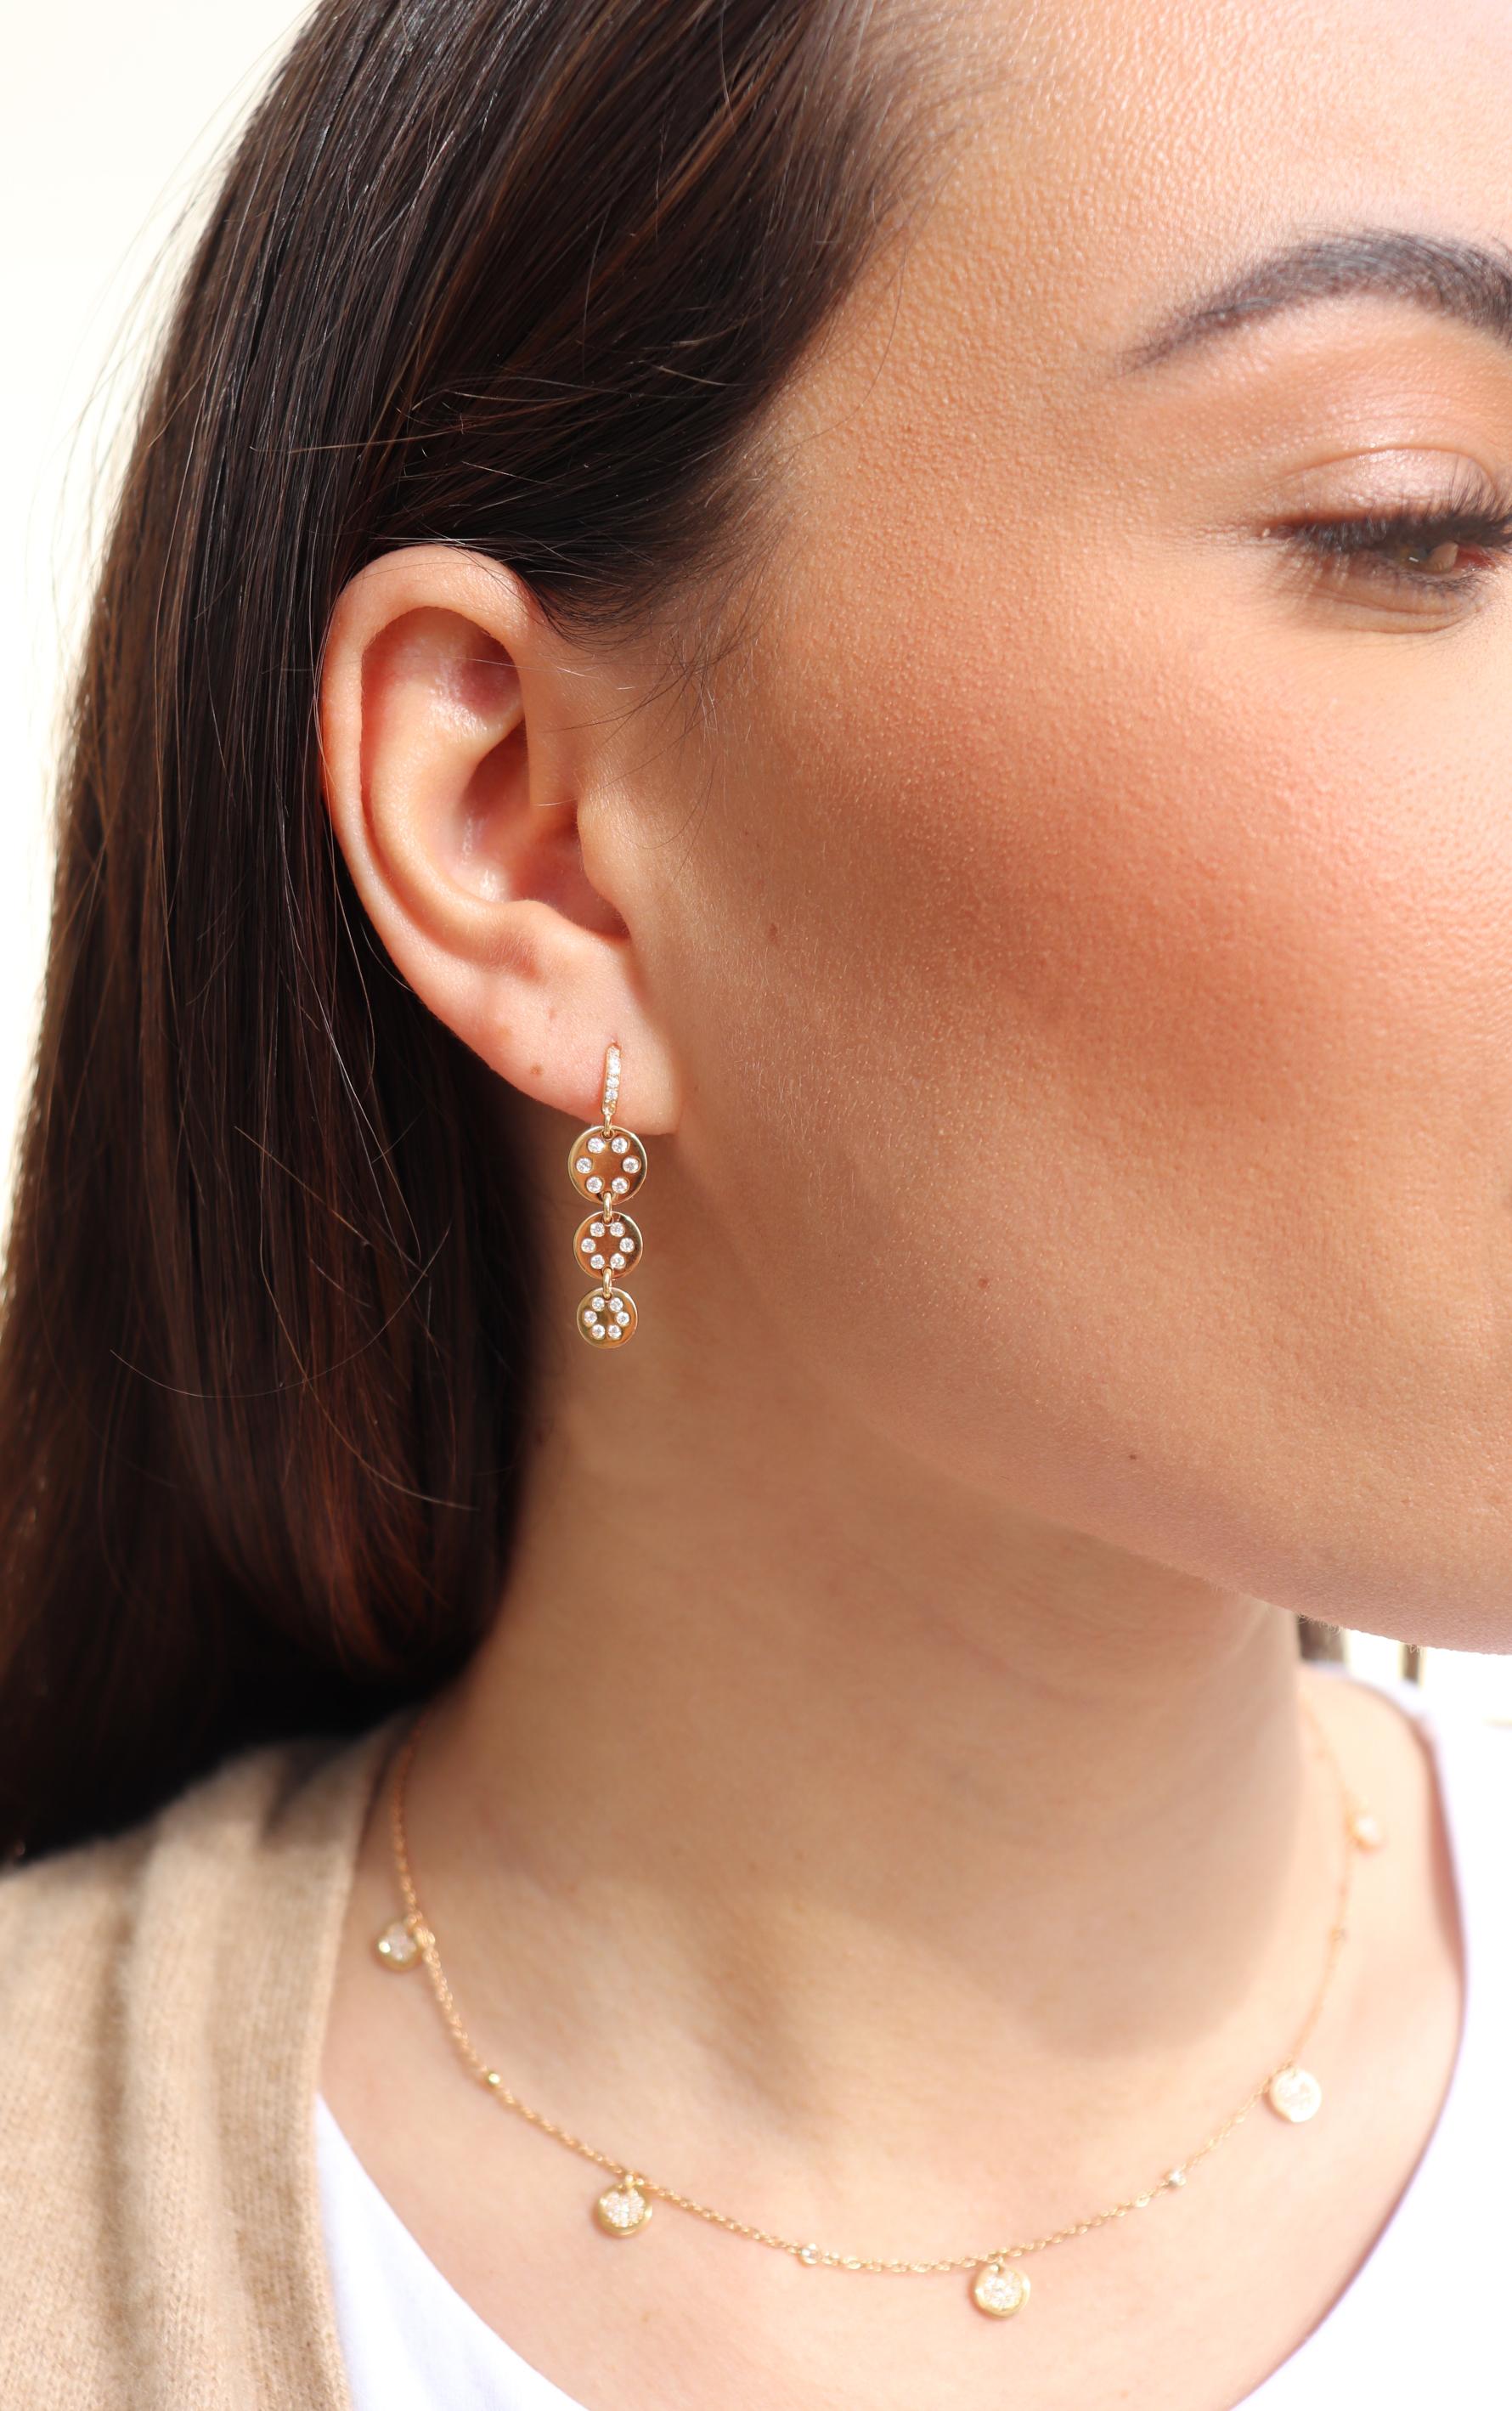 die Ohrringe aus 18 Karat Roségold stammen aus der Jackpot-Kollektion. Diese stilvollen Ohrringe  bestehen aus 3 Kreisen, die jeweils mit runden farblosen Diamanten von insgesamt 0,32 Karat besetzt sind. Das Gesamtgewicht des Metalls beträgt 4,65 g.